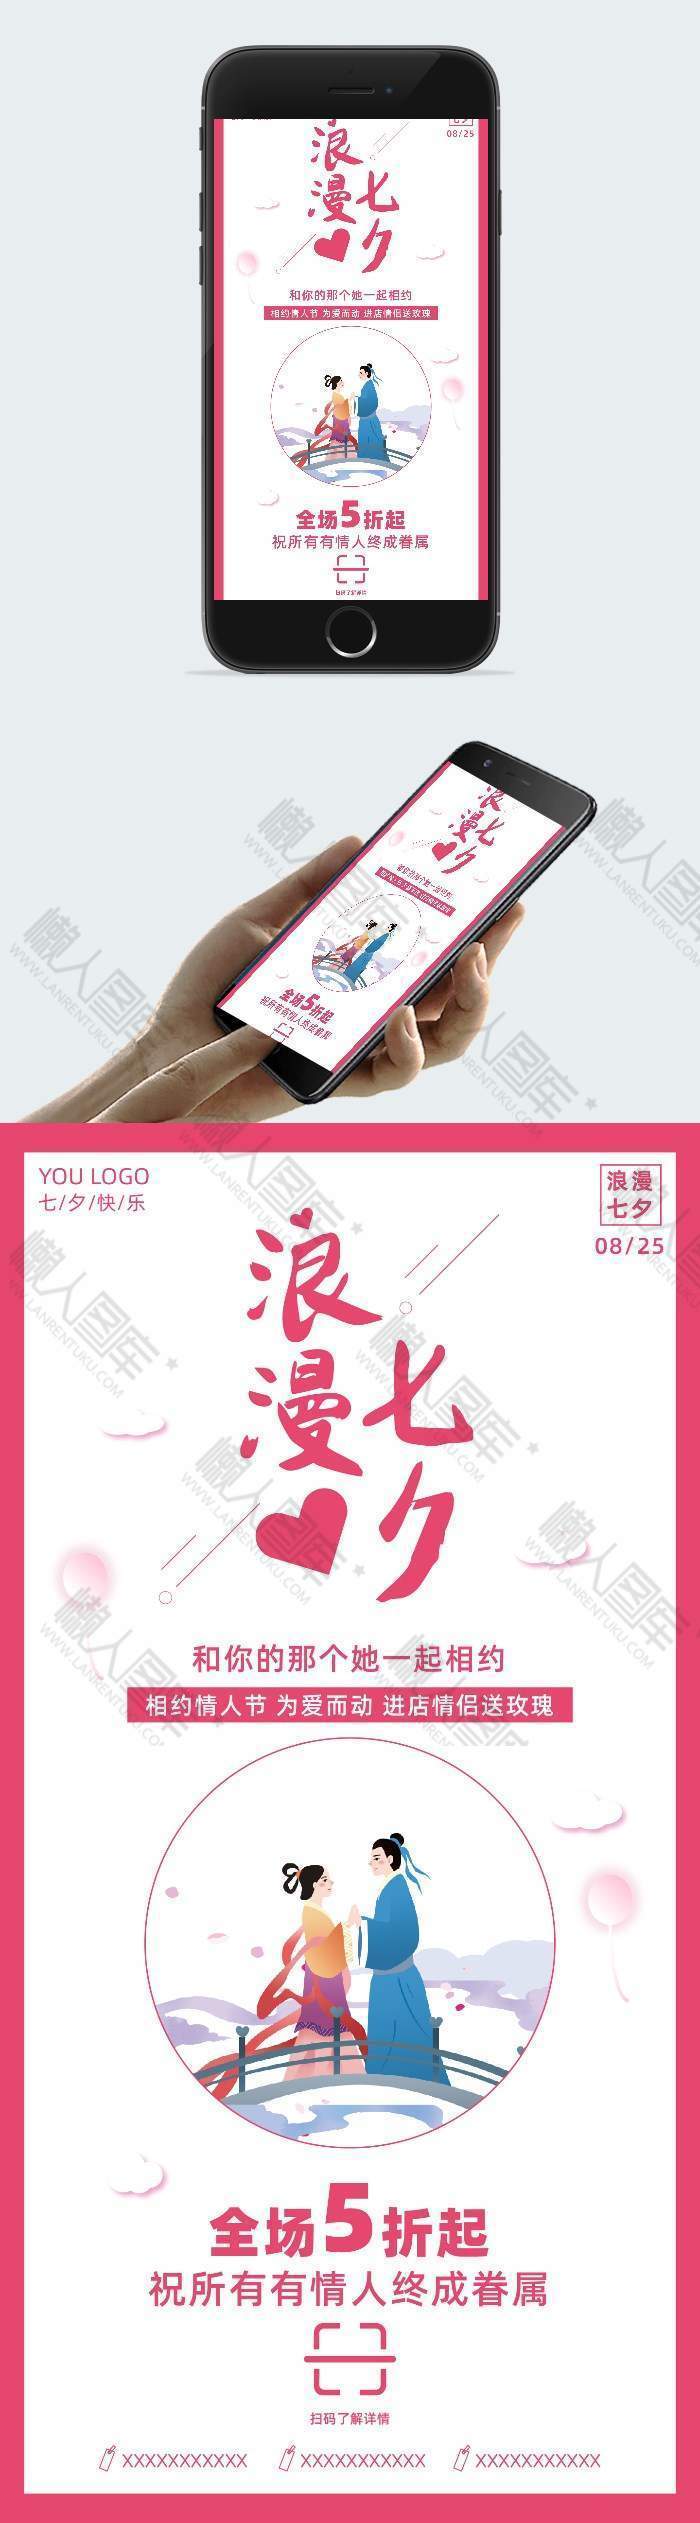 浪漫七夕新媒体手机海报